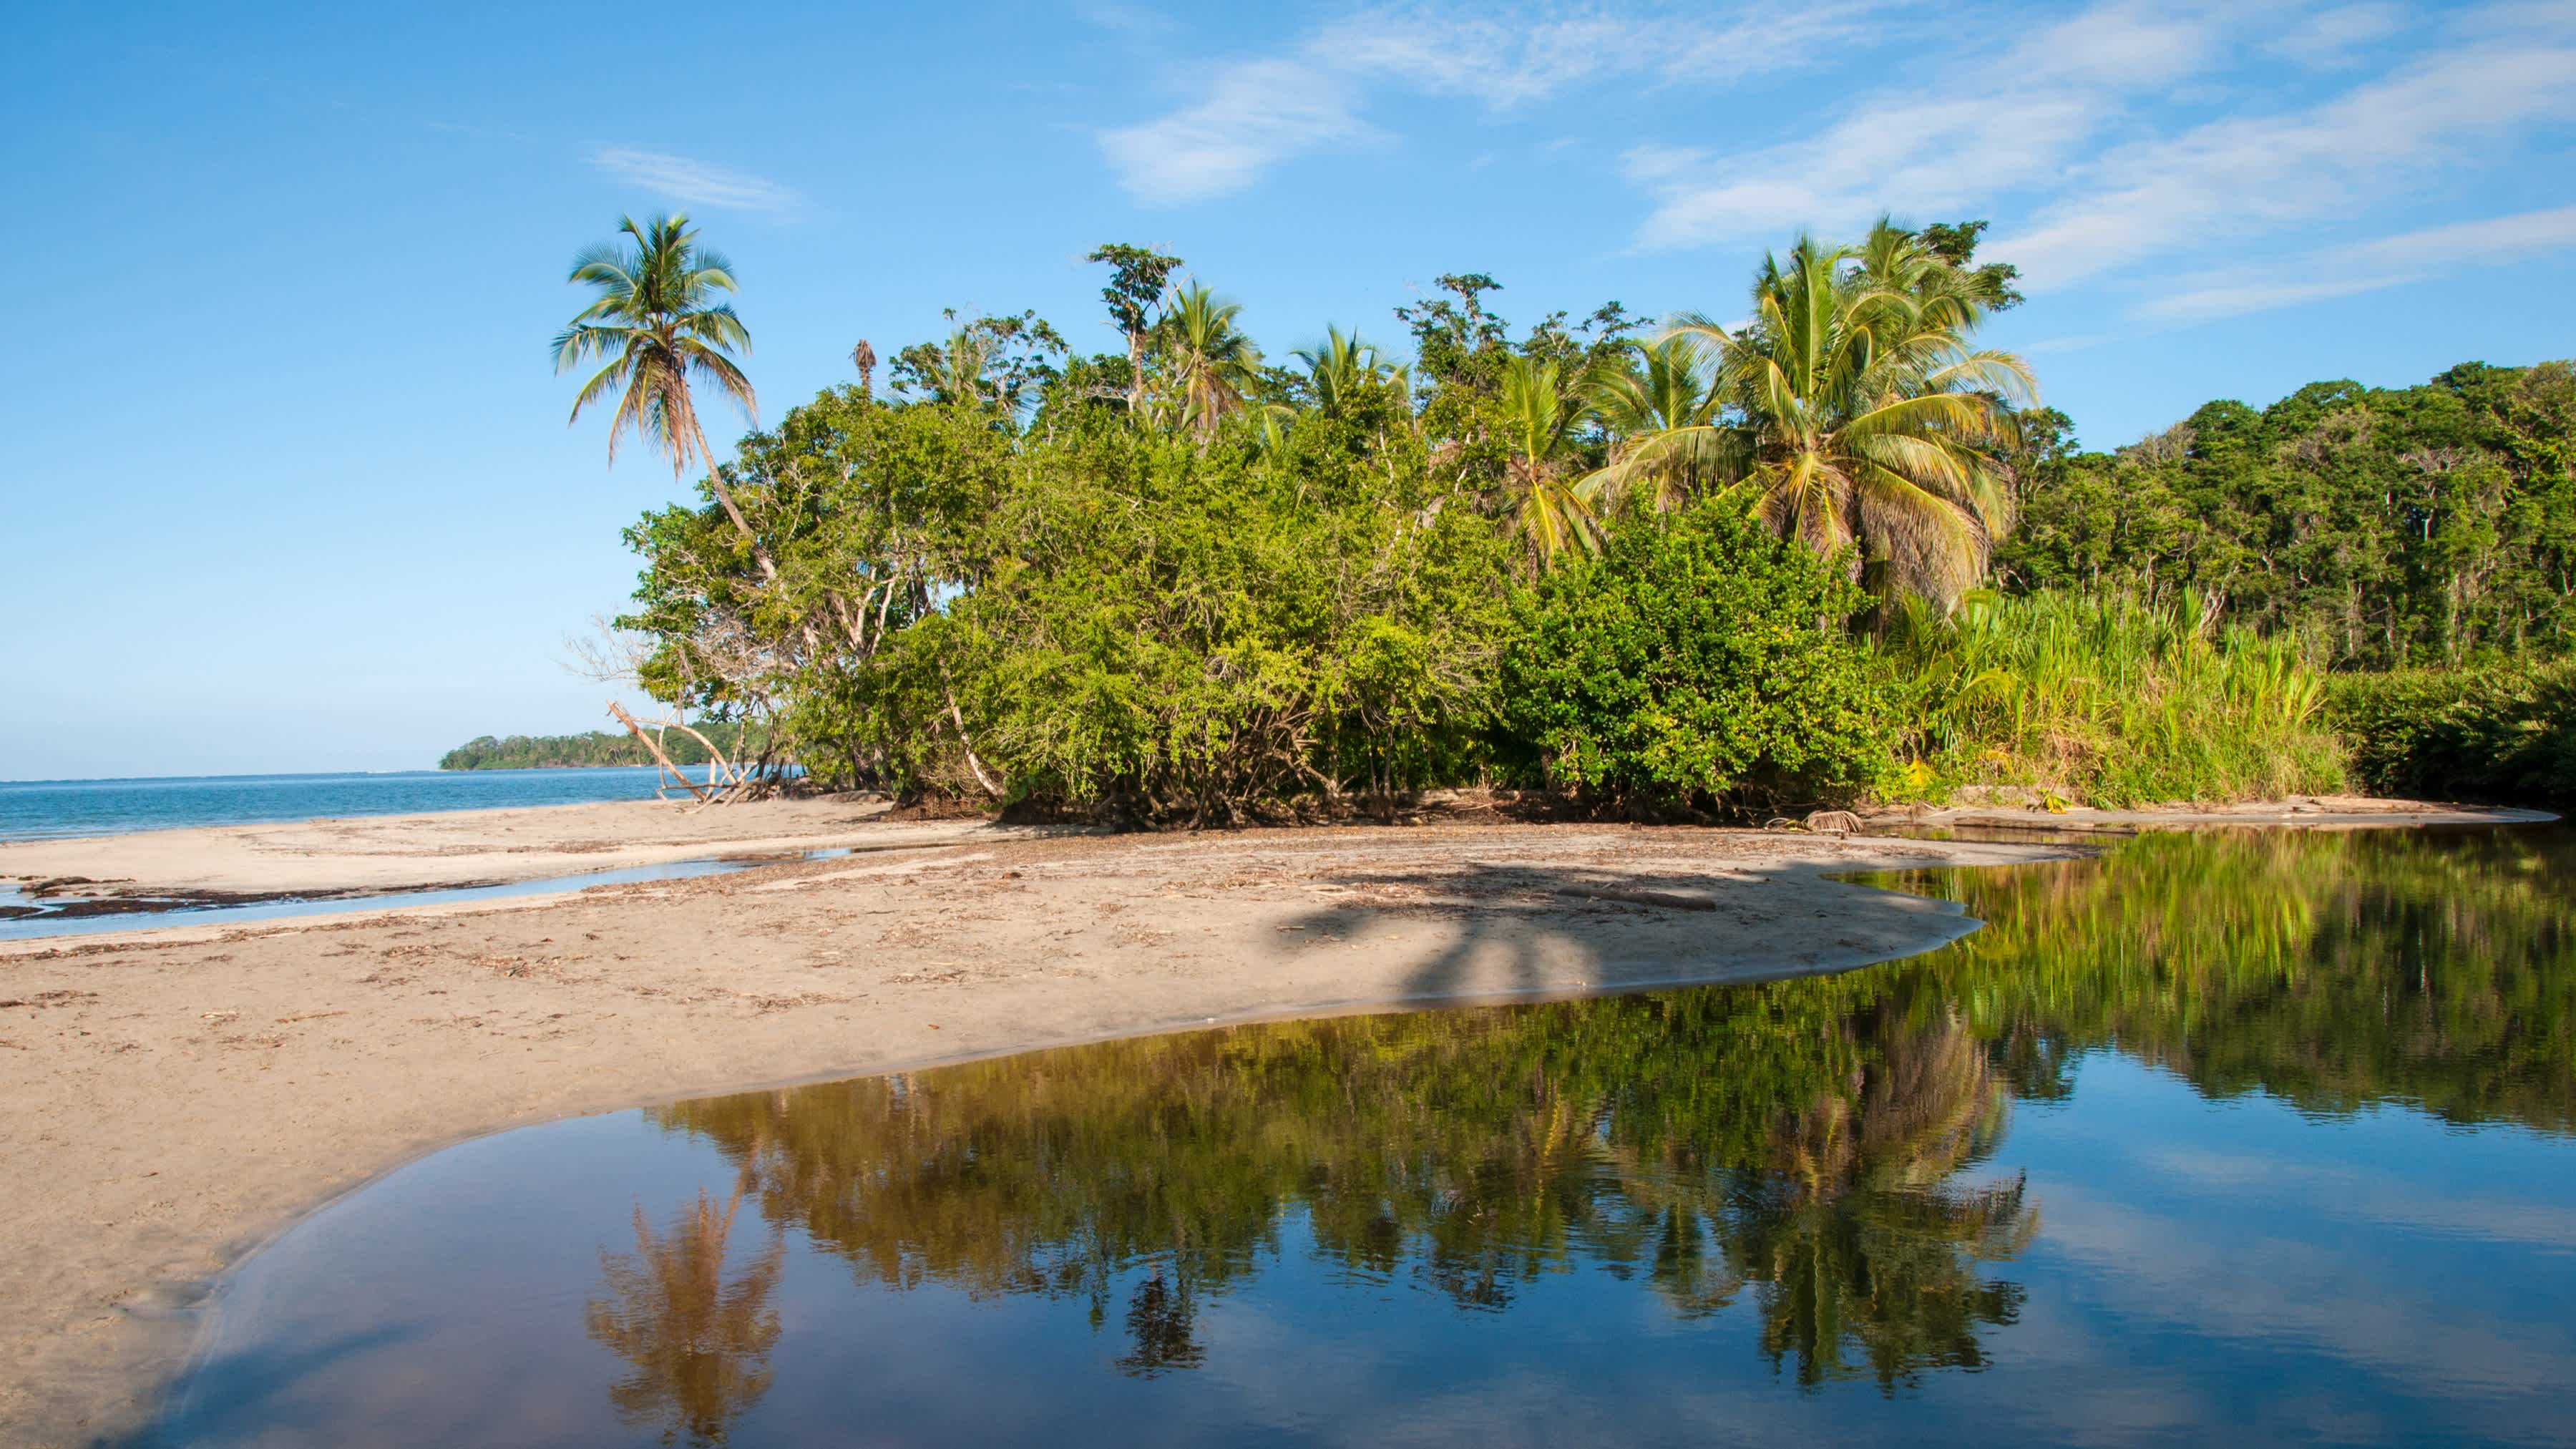 Lagune und Strand in der Nähe von Cahuita, Costa Rica.

